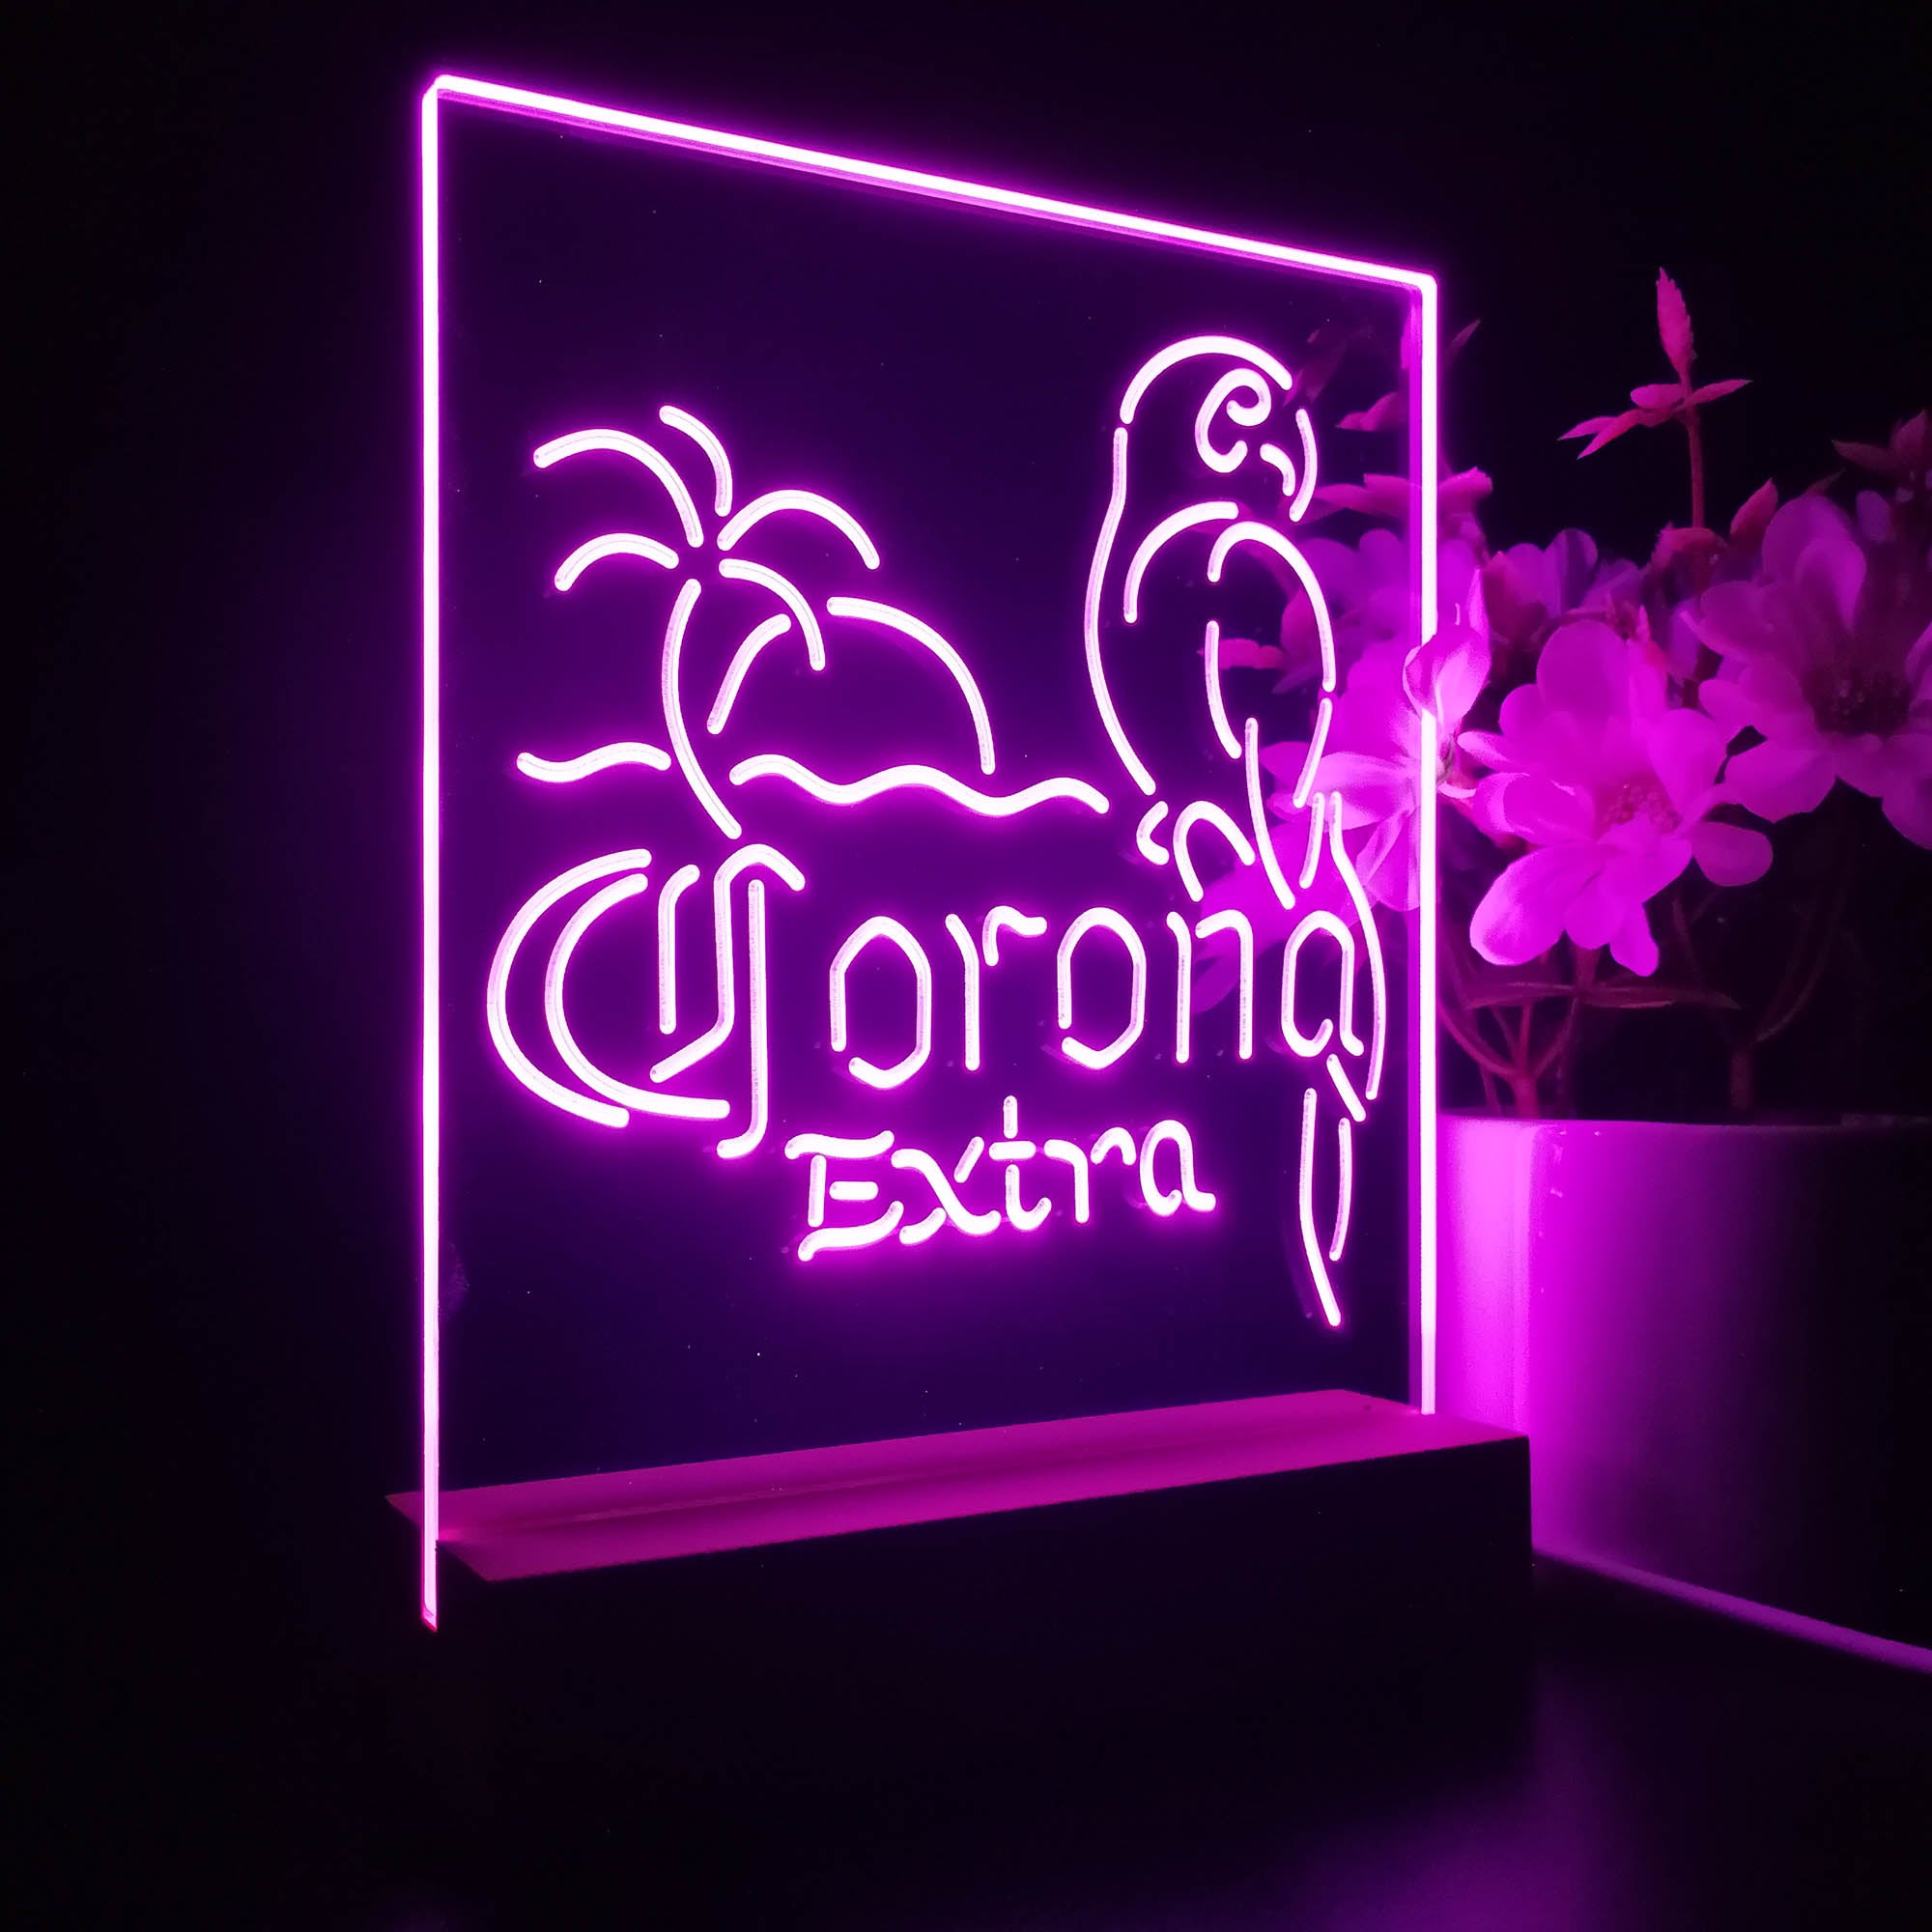 Corona Parrot Palm Tree 3D LED Illusion Night Light Table Lamp